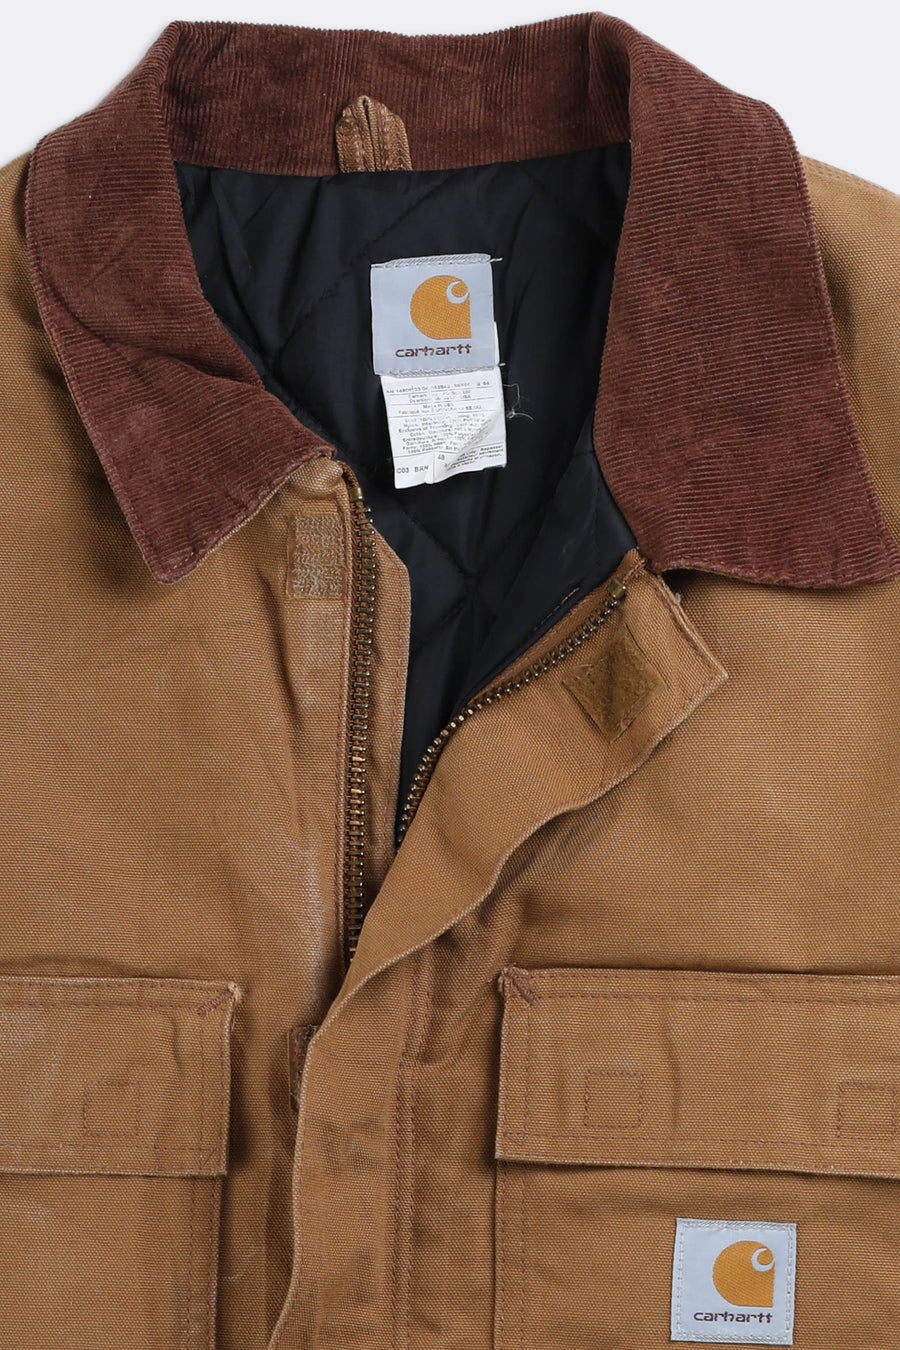 Vintage Carhartt Jacket